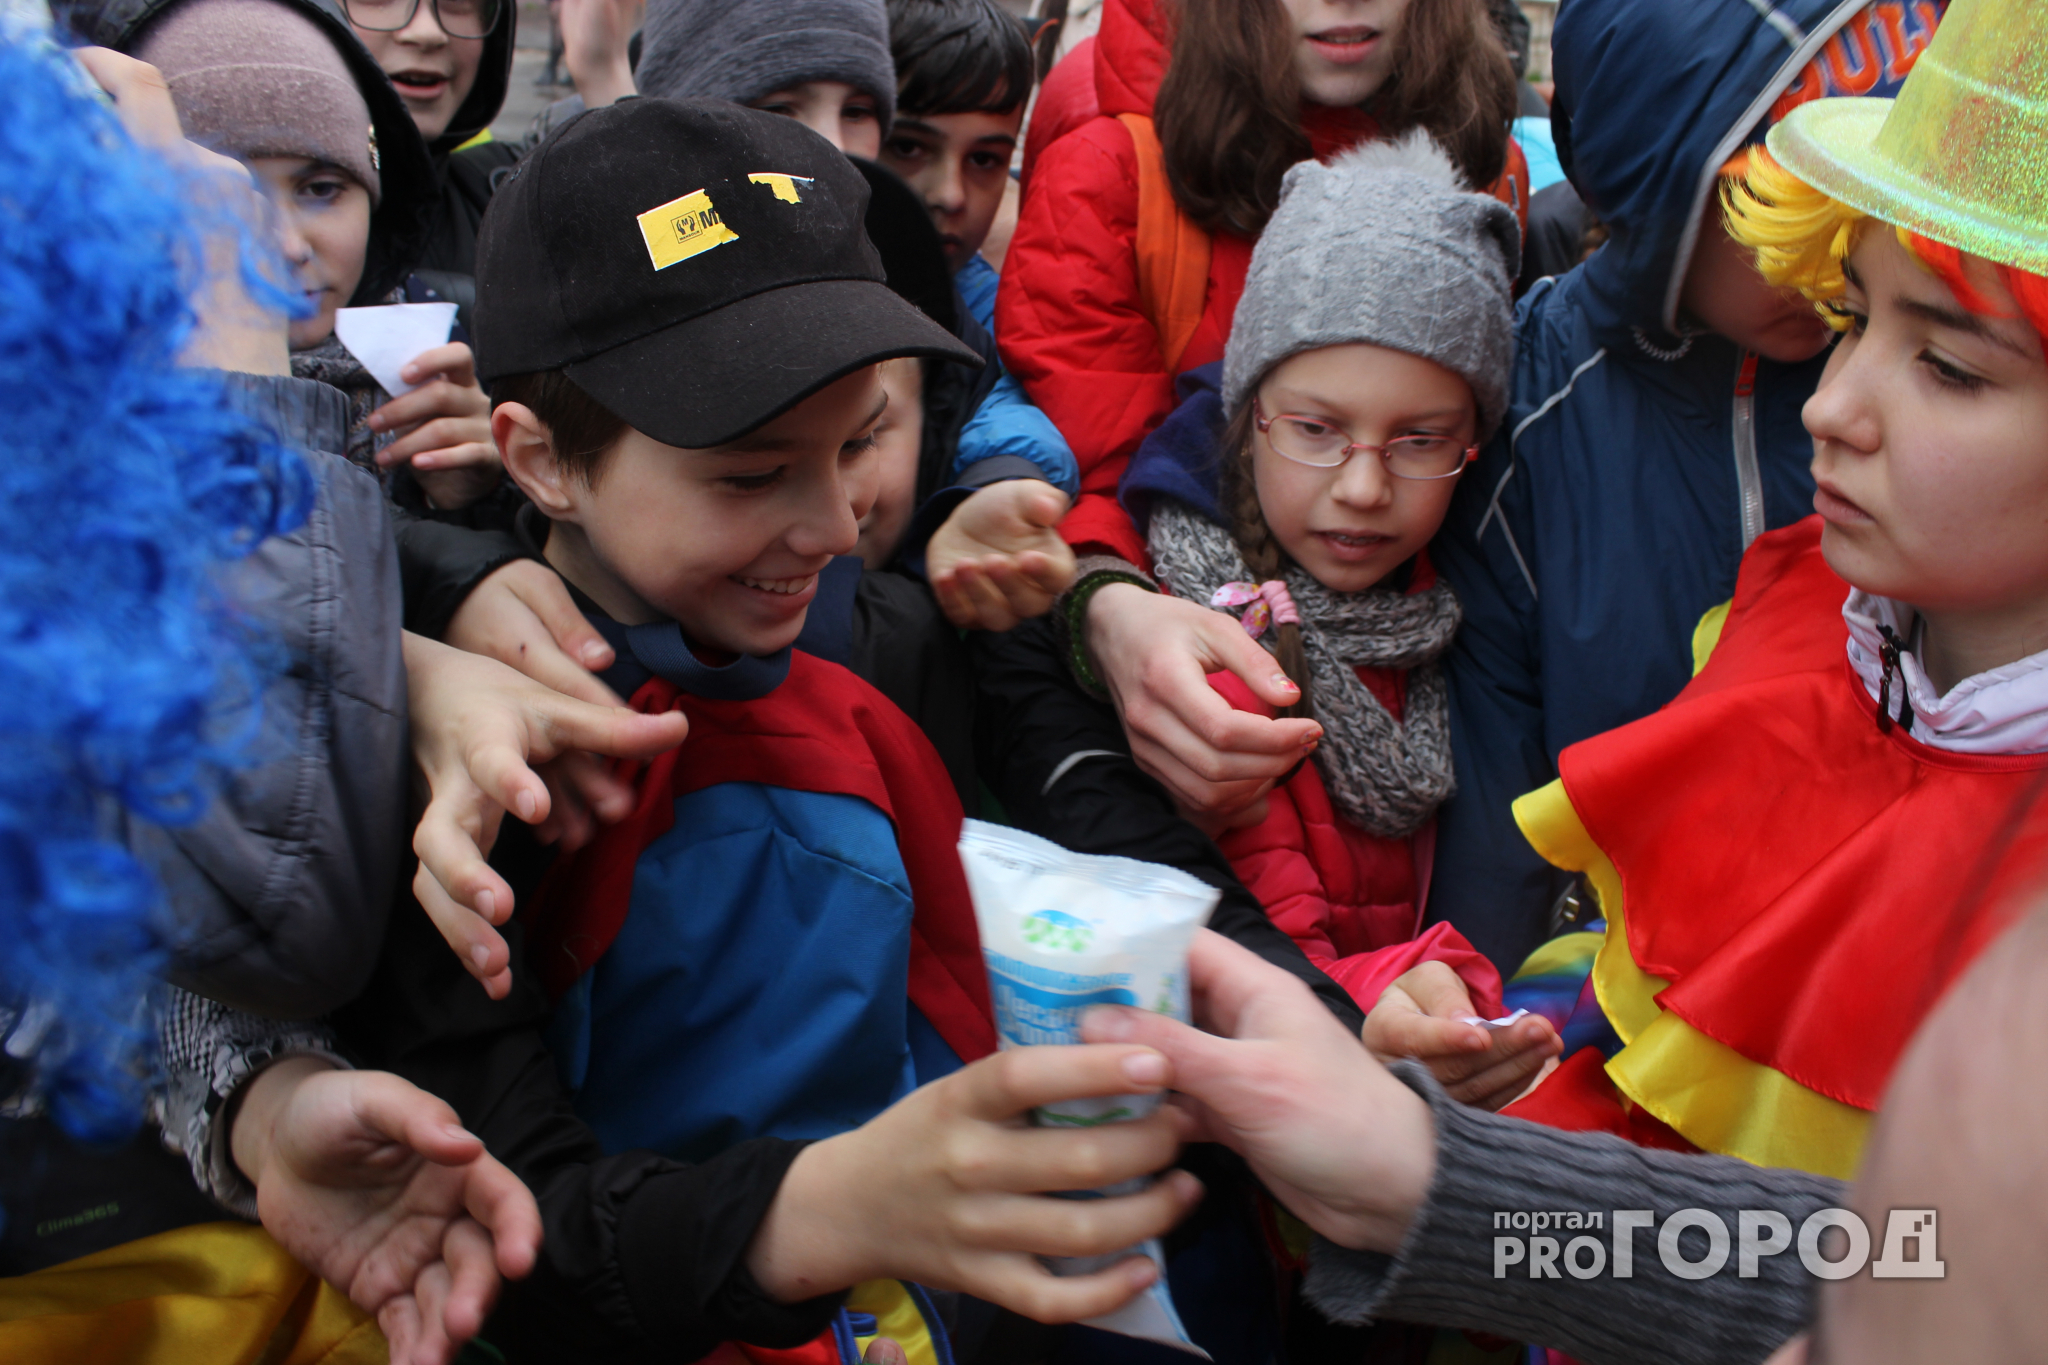 Раздача бесплатного мороженого в центре Сыктывкара вызвала ажиотаж (фото, видео)